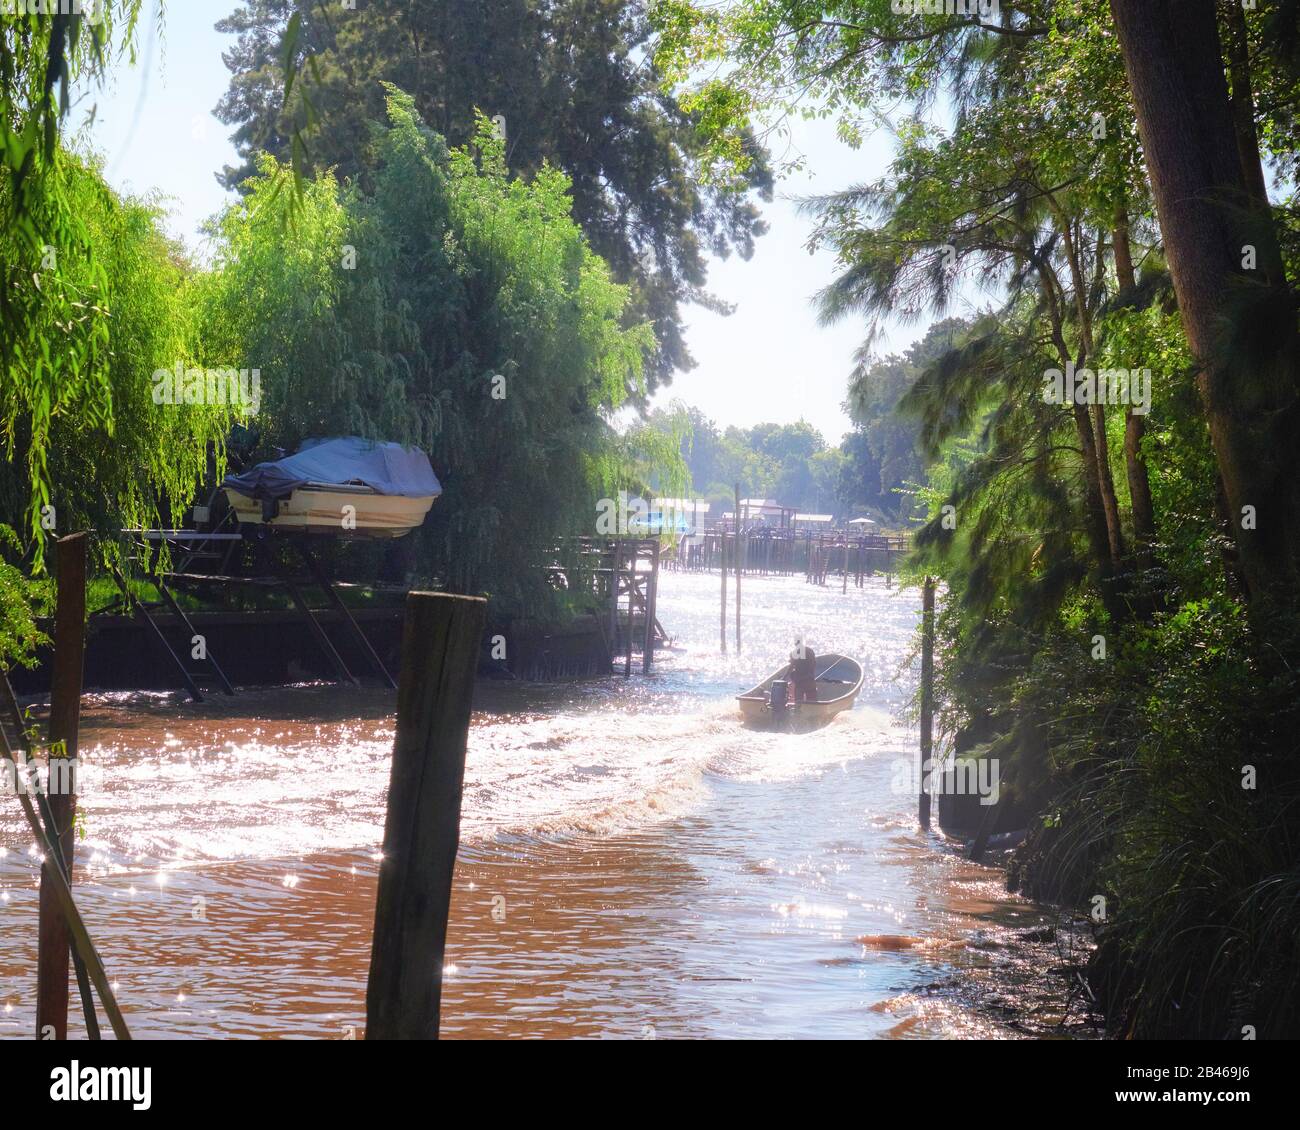 Üppige Vegetation, Motorboot auf einem schnellen Fluss. Tigra Delta in Argentinien, Kanäle und Flusssystem des Parana Delta North von der Hauptstadt Buenos Aire Stockfoto